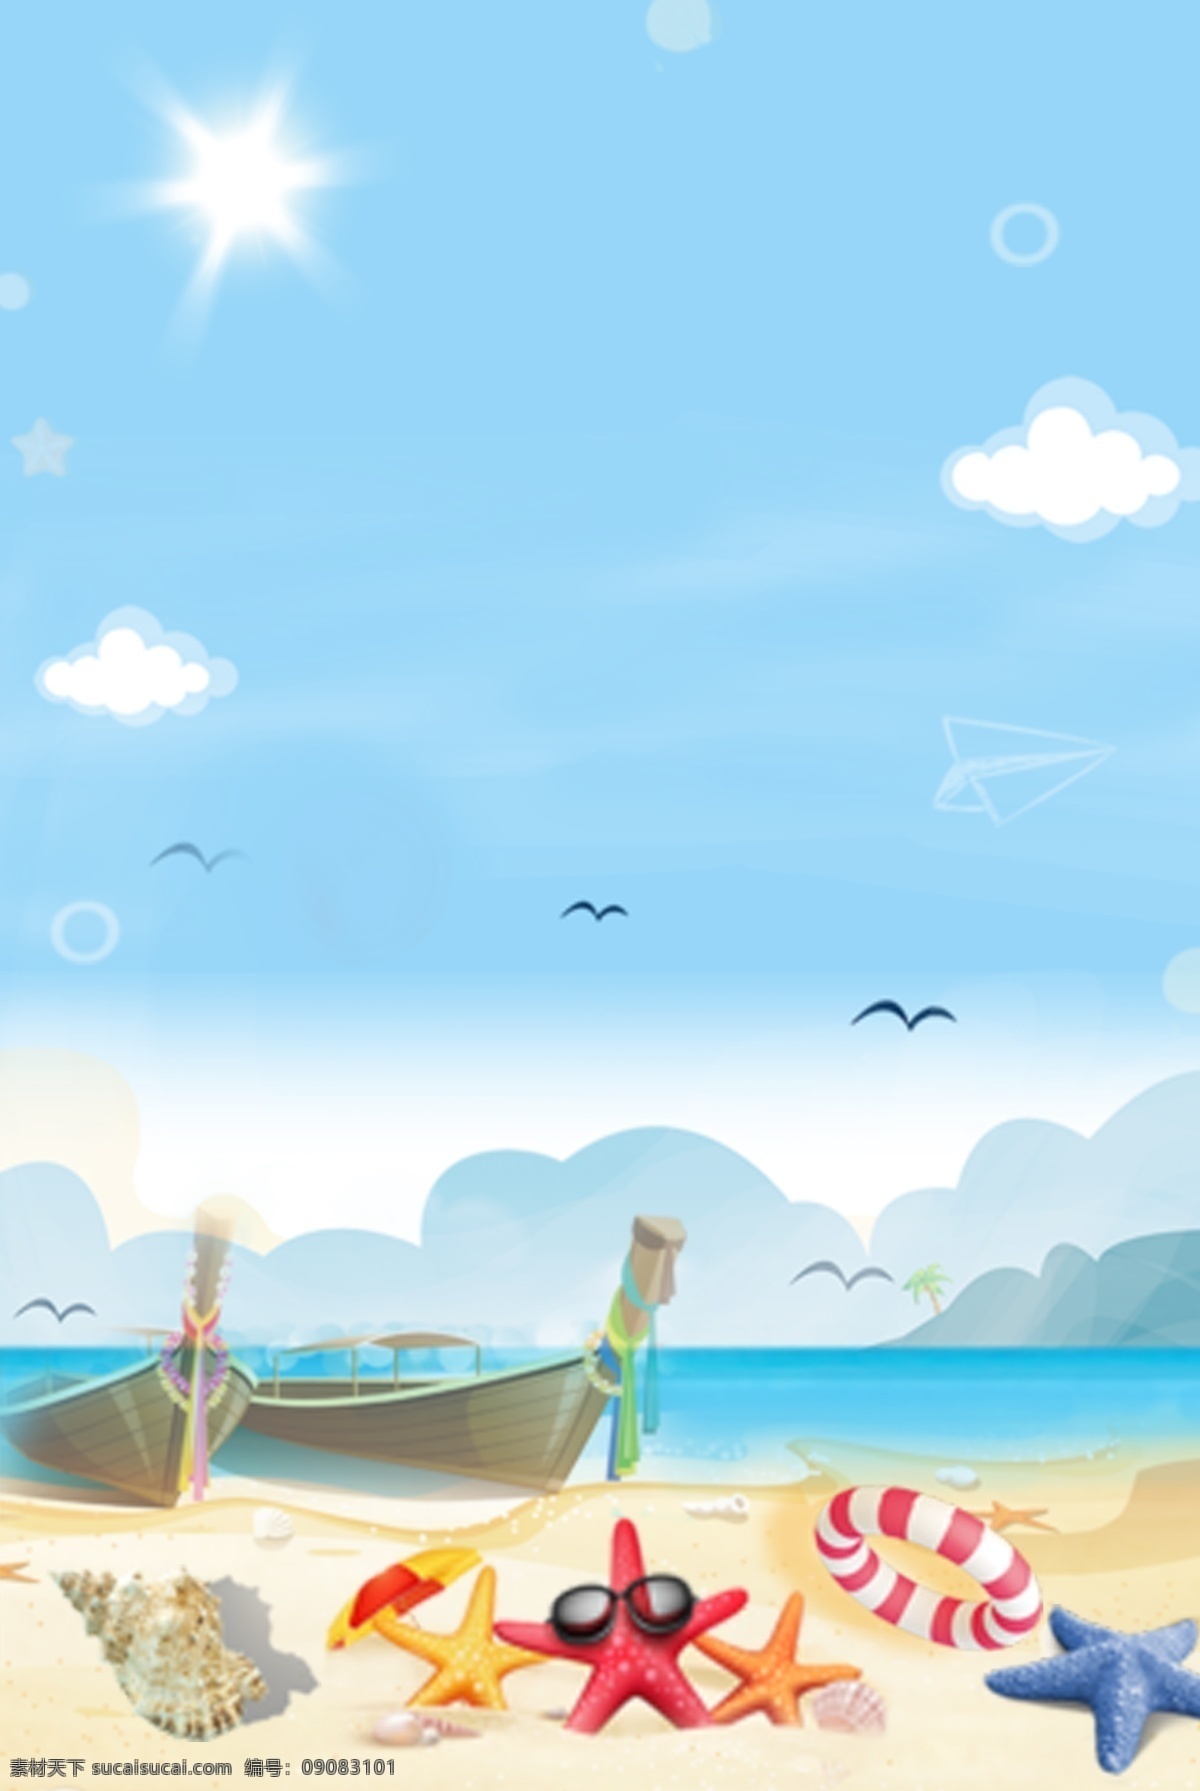 卡通 海洋 沙滩 天空 海岛 背景 陆地 白云 椰子树 动物 海藻 珊瑚 鲸鱼 海底 海星 卡通设计